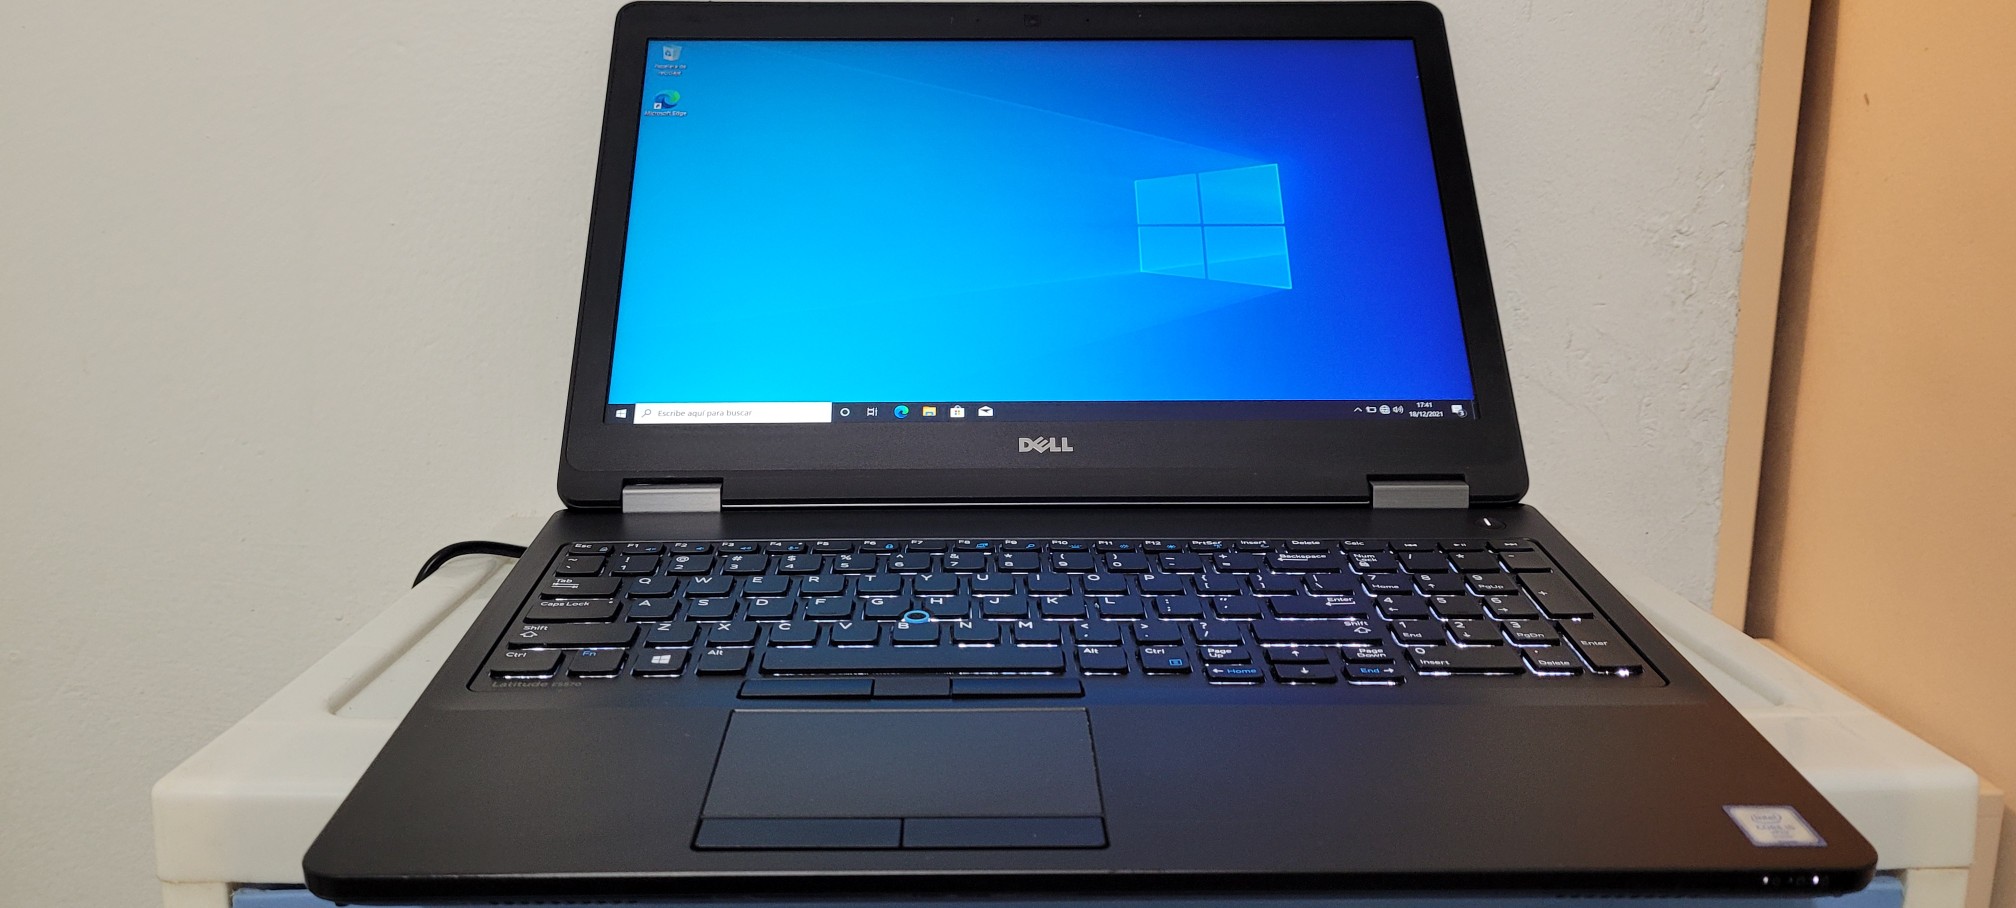 computadoras y laptops - Dell latitude 17 Pulg Core i7 2.6ghz Ram 8gb Disco 1000gb Teclado iluminado